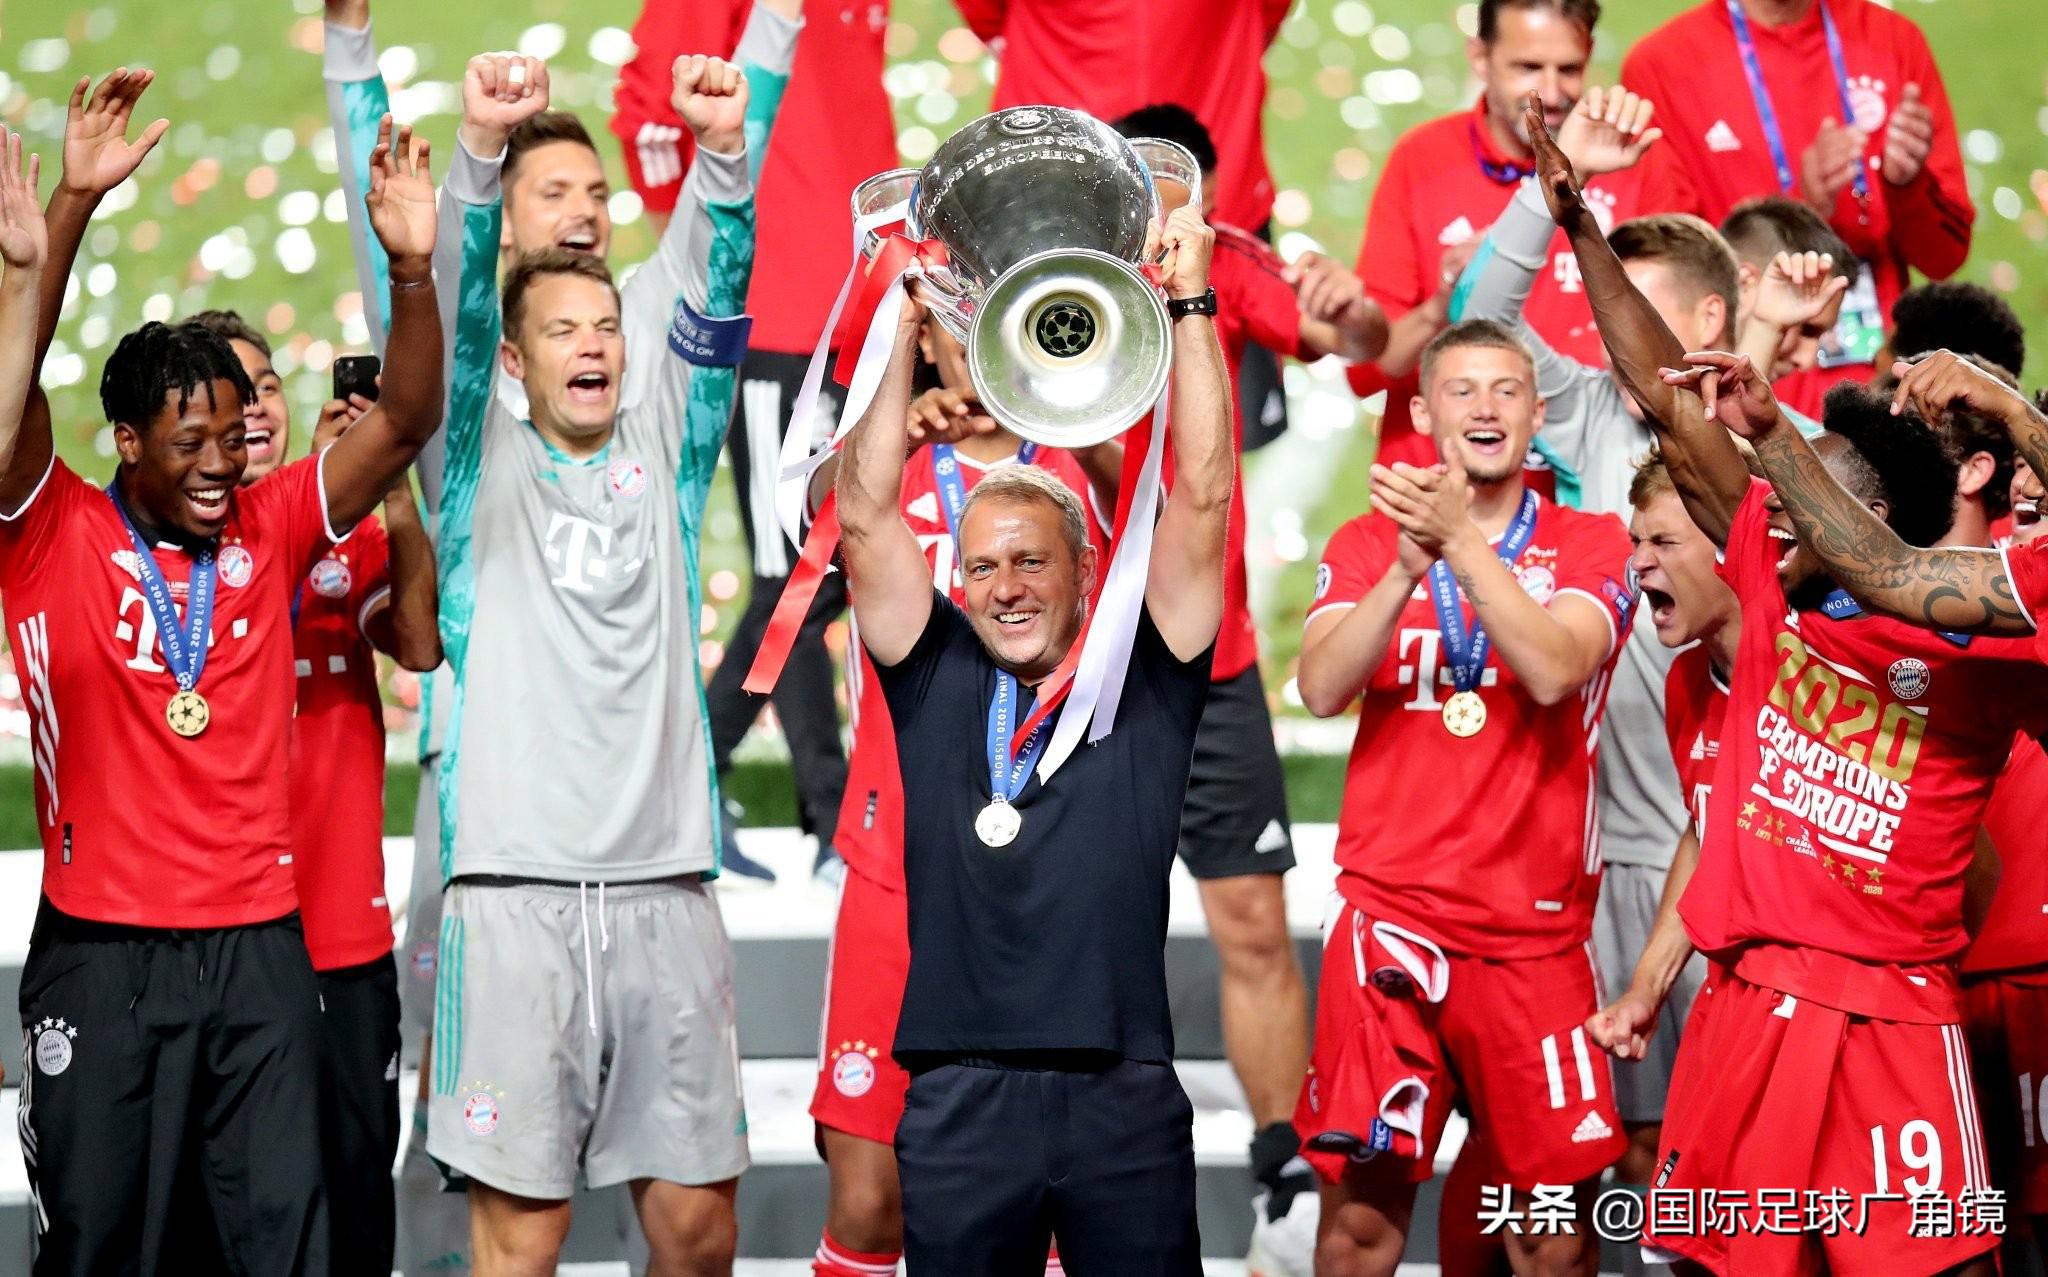 世界各地看欧冠决赛 慕尼黑陷入狂欢——德国媒体看欧冠(5)